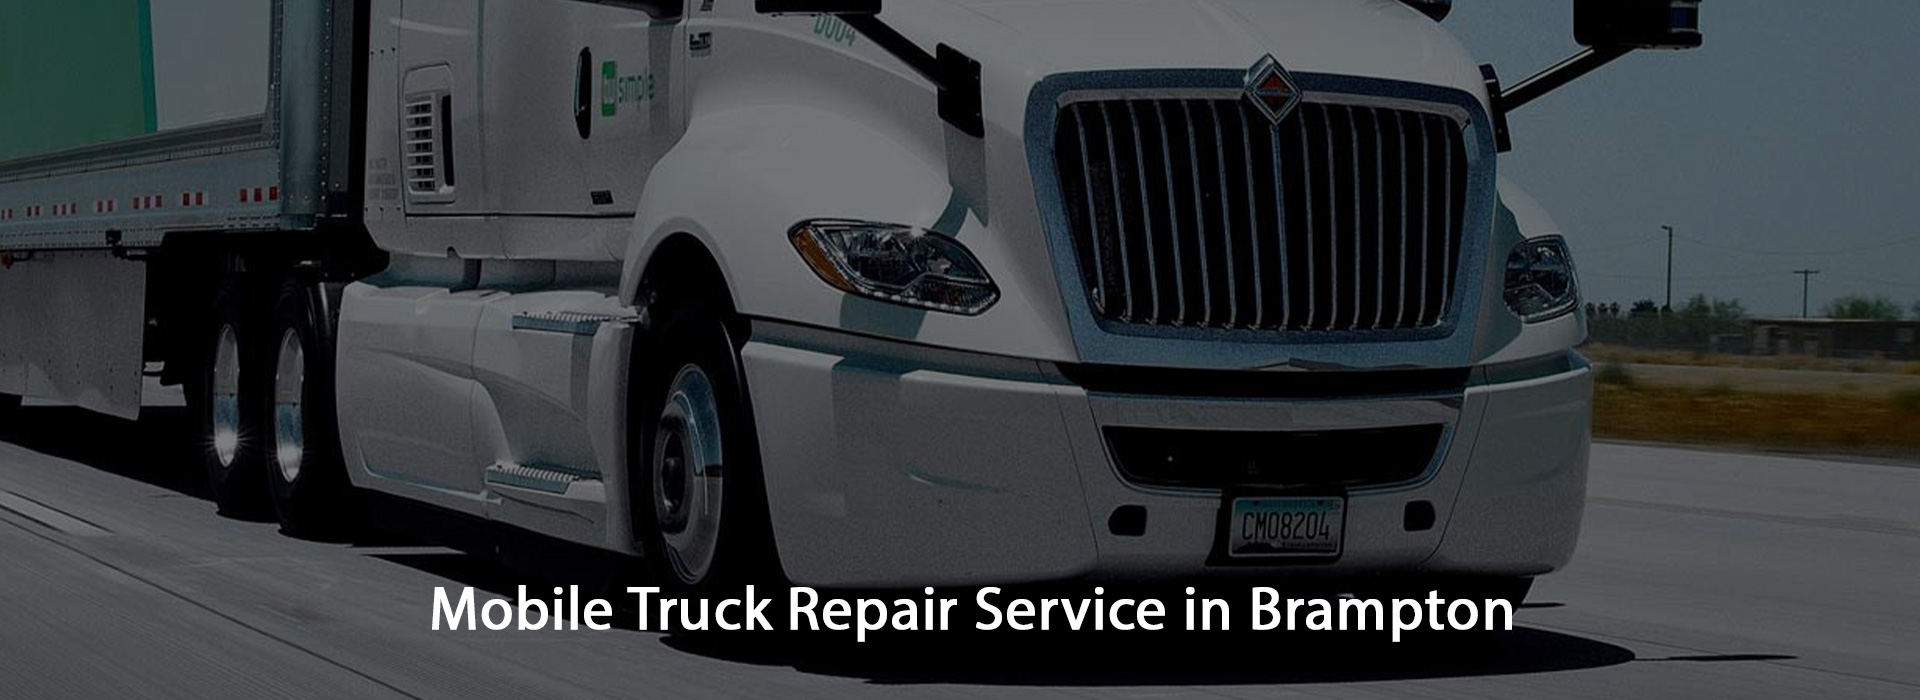 Mobile truck repair service in Brampton